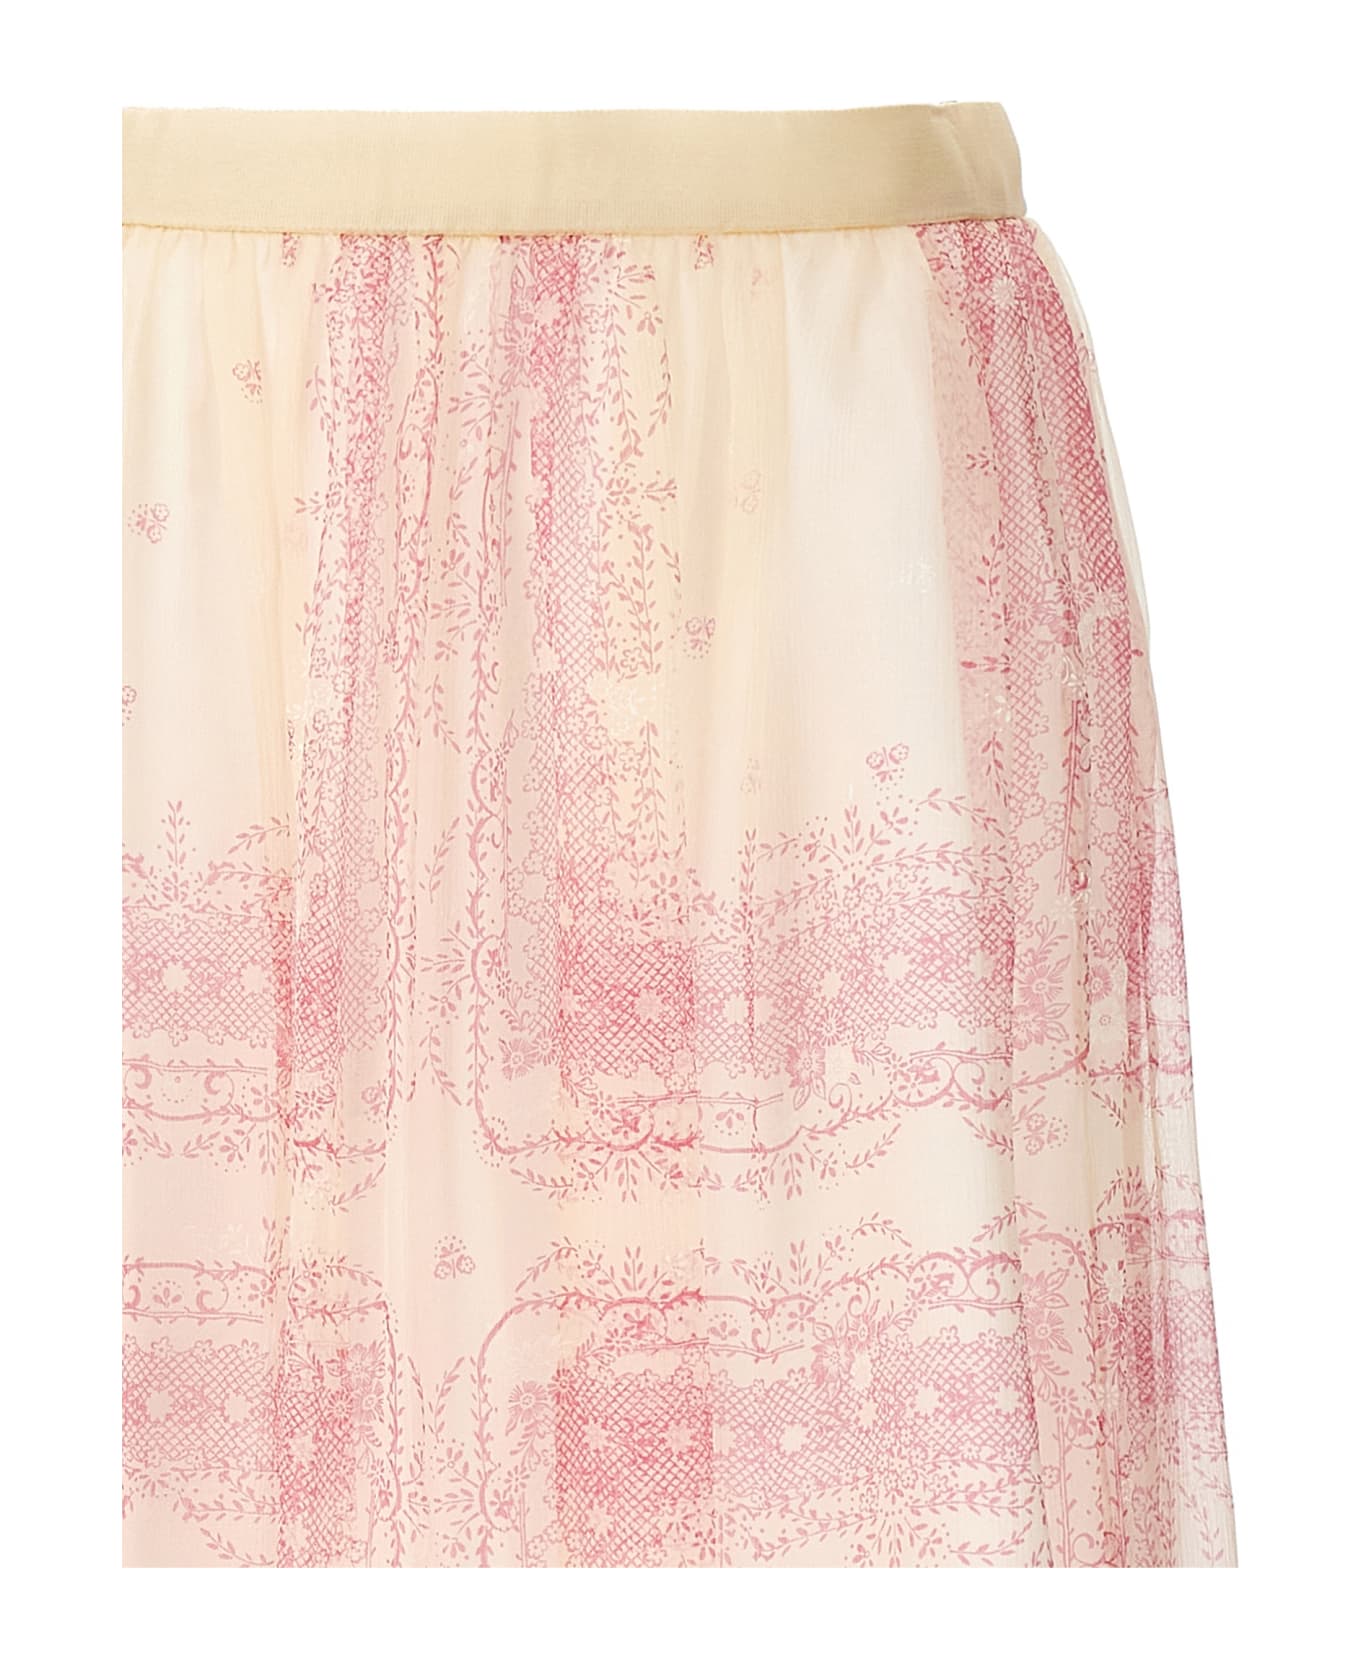 Philosophy di Lorenzo Serafini Printed Skirt - Pink スカート